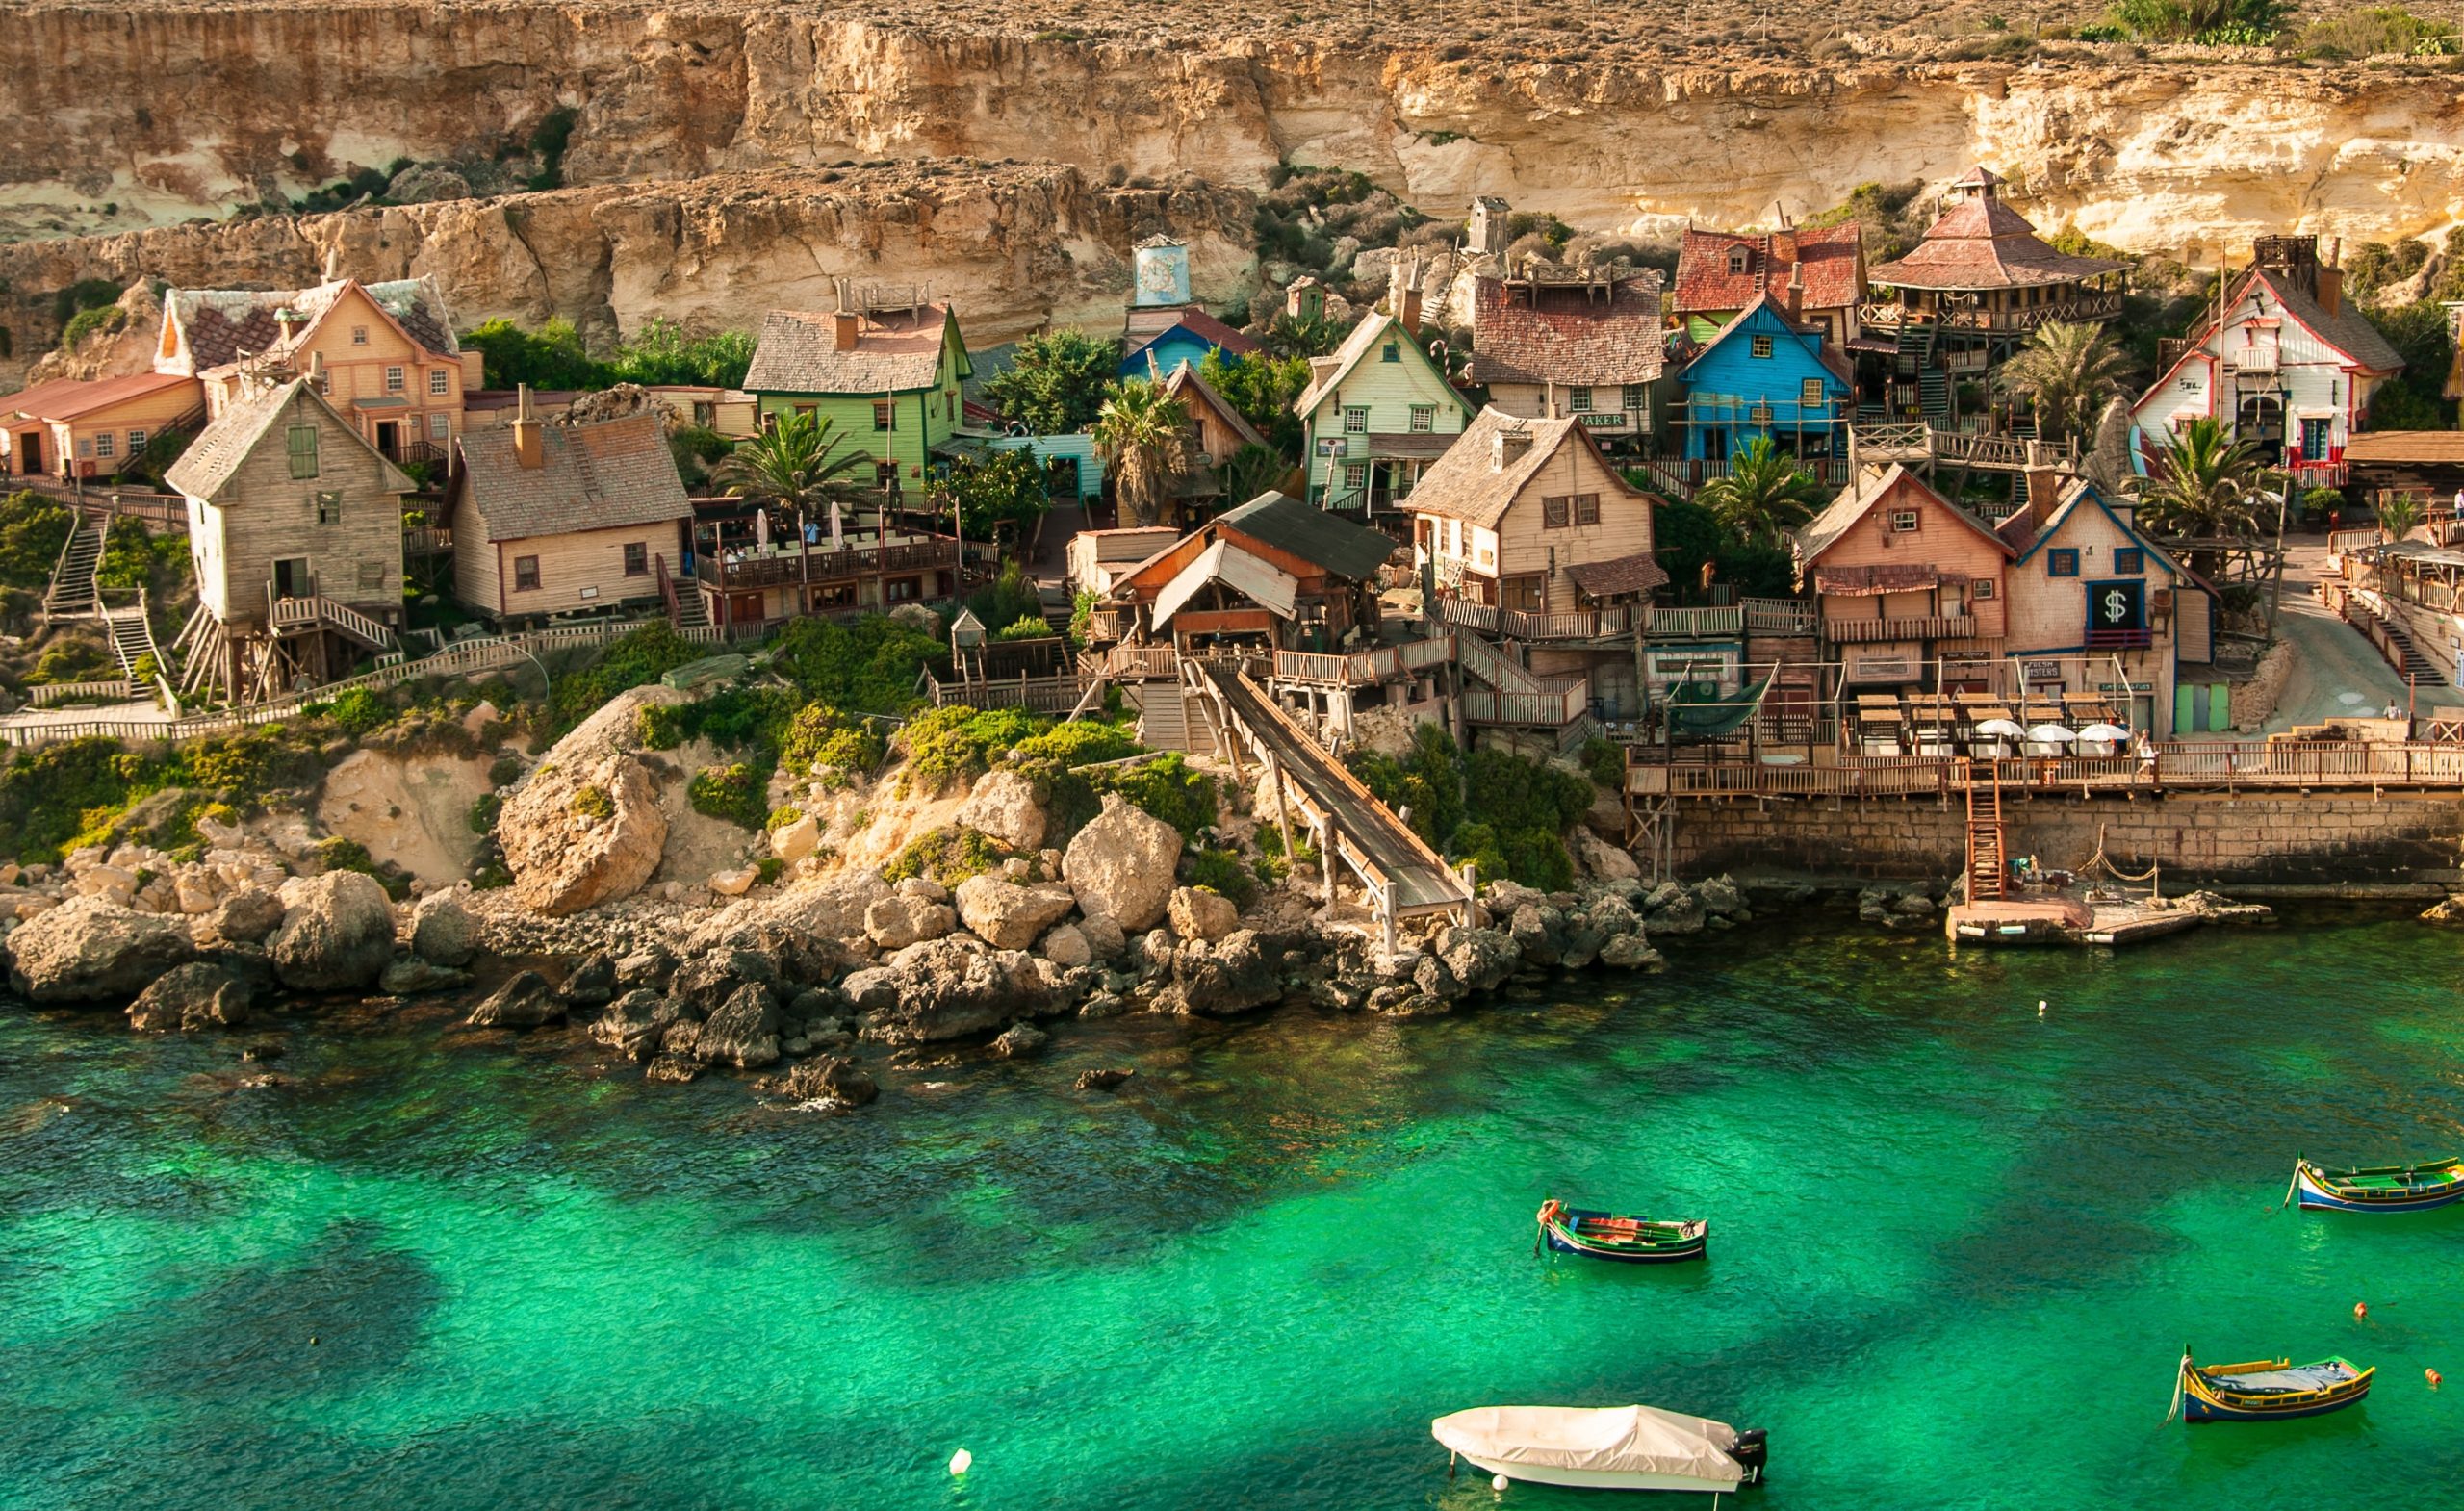 The stunning Popeye village in Mellieha Malta